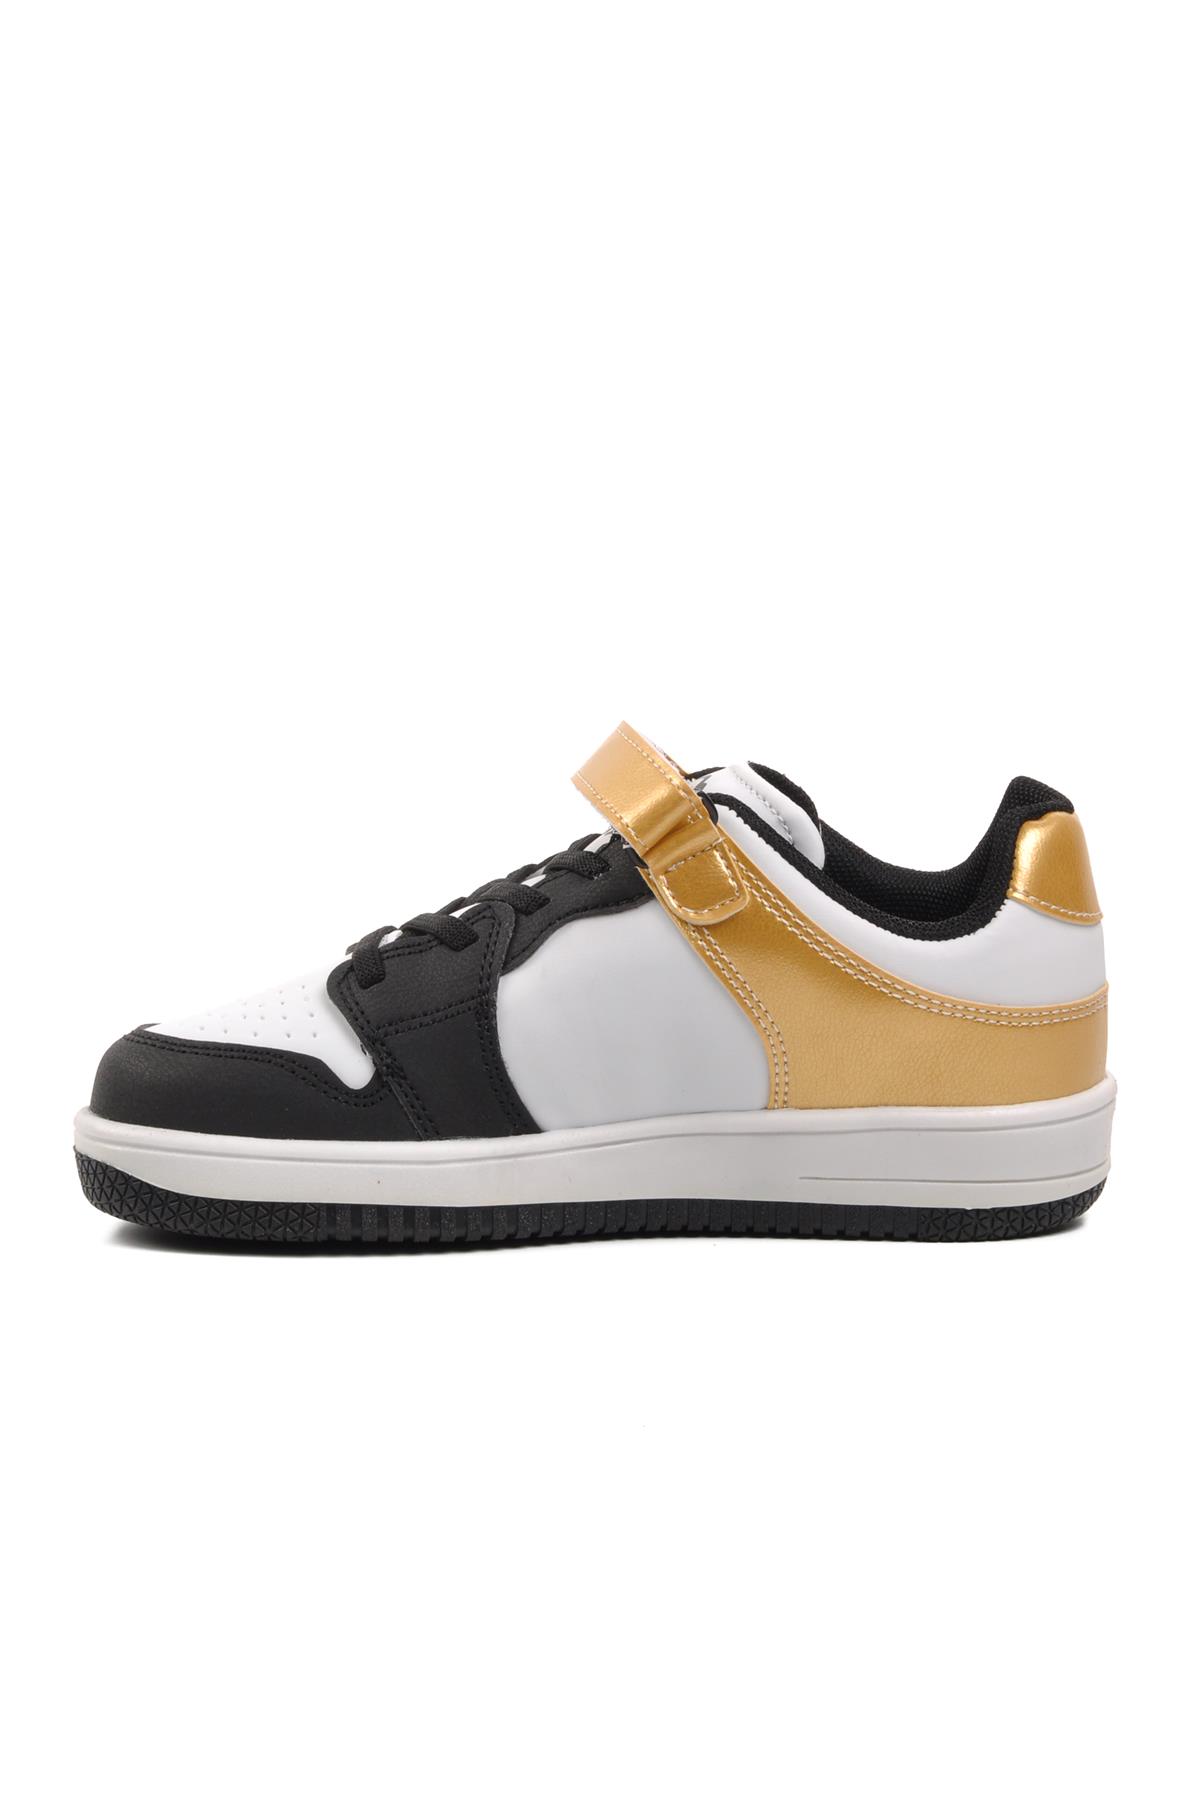 Ayakmod Haykat Kısa-F Gold Cırtlı Unisex Çocuk Sneaker Ayakmod Çocuk Spor Ayakkabı